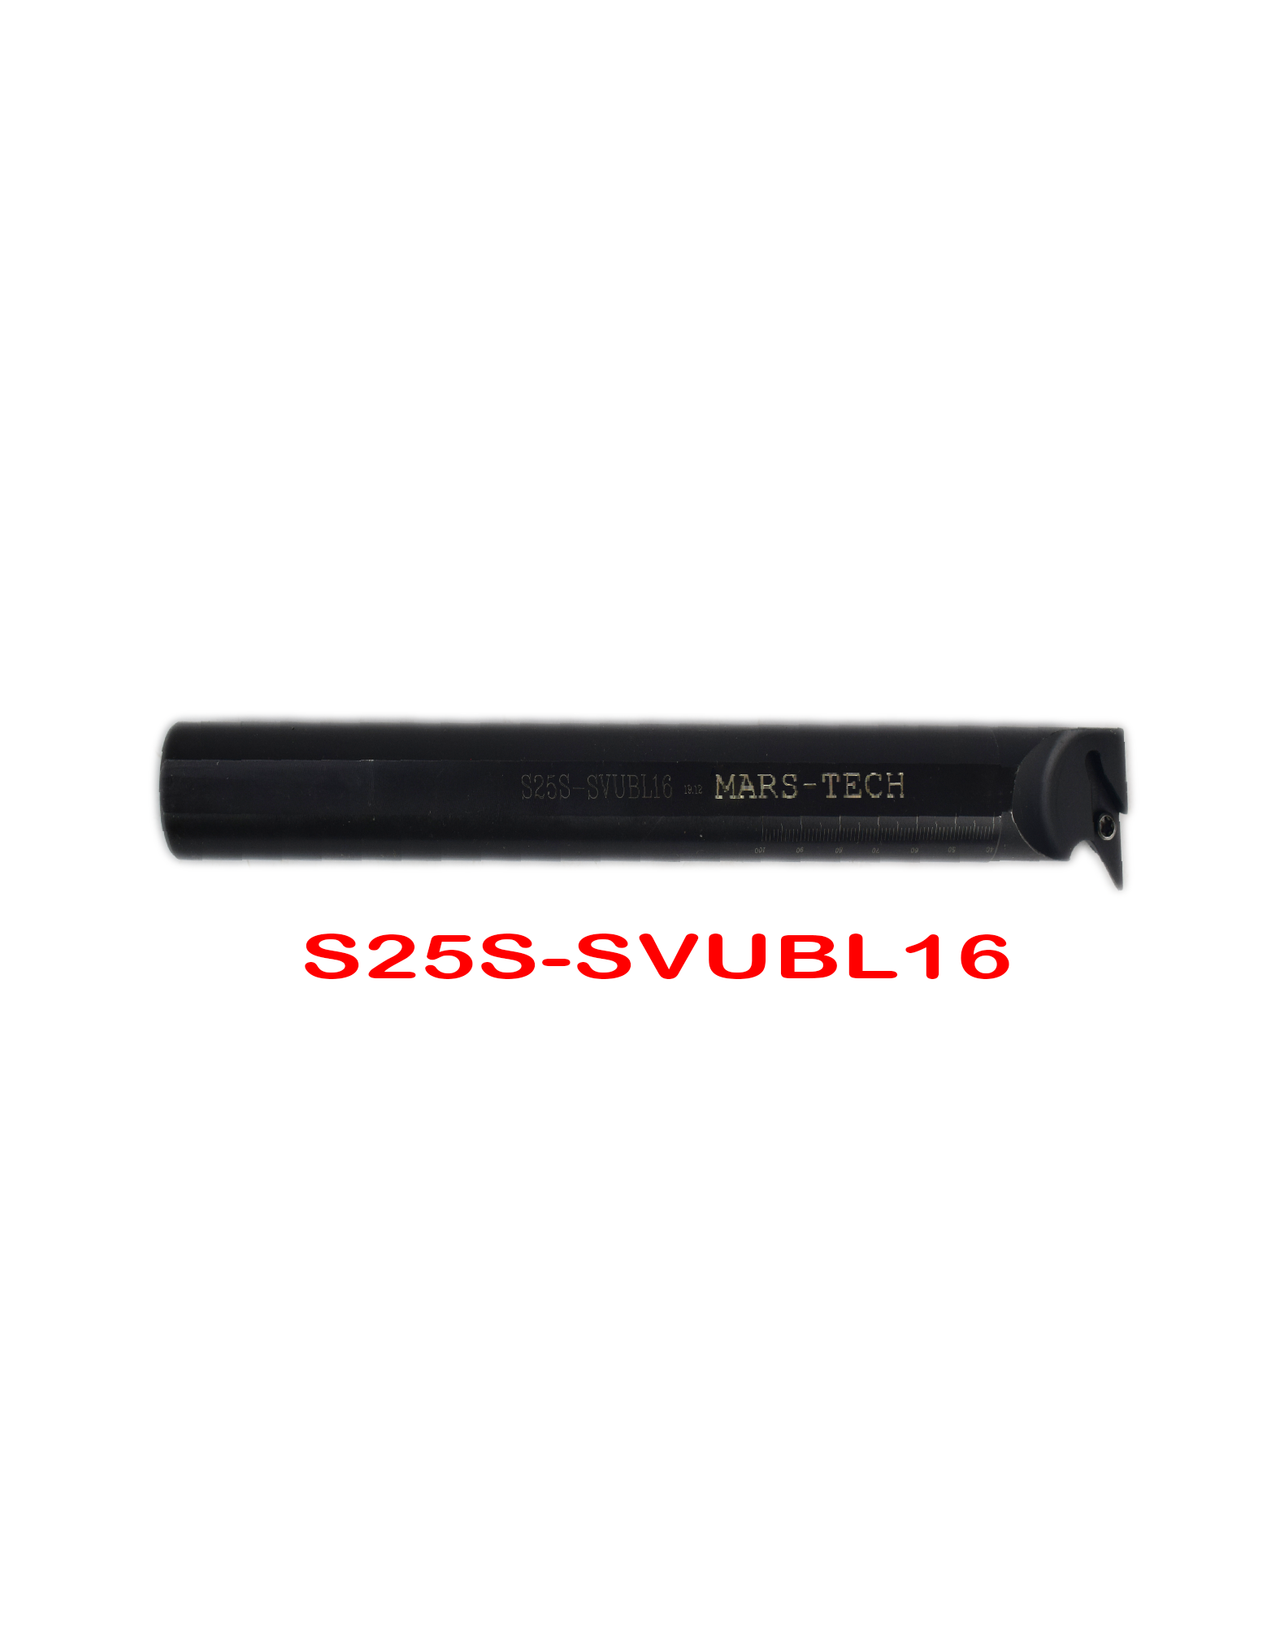 SVUBL/R vbmt1604 Boring bar dia 20/25/32 pack of 1